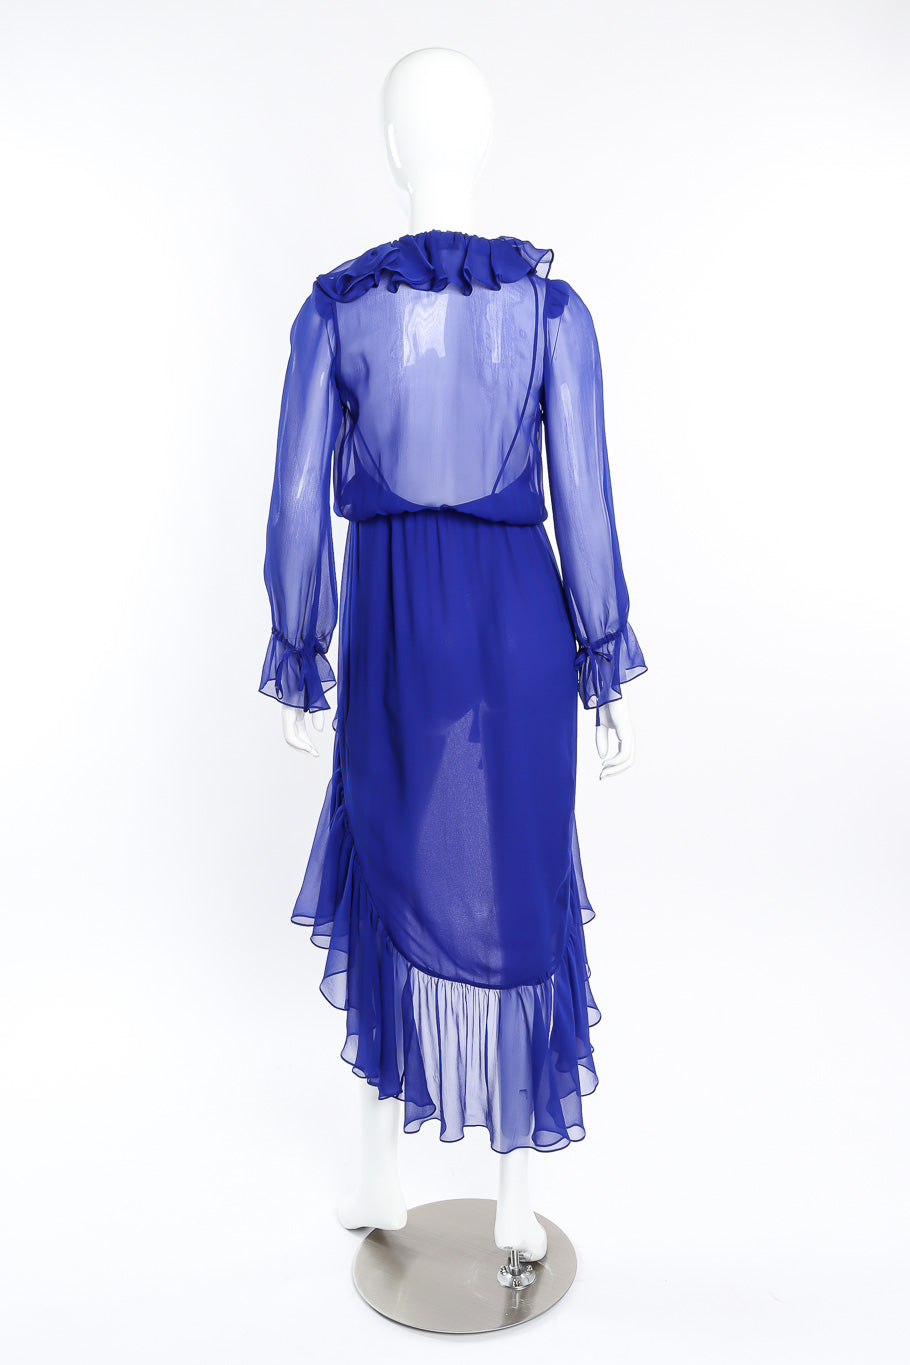 Saint Laurent 2020 Fall Sheer Silk Ruffle Dress back view on mannequin @Recessla